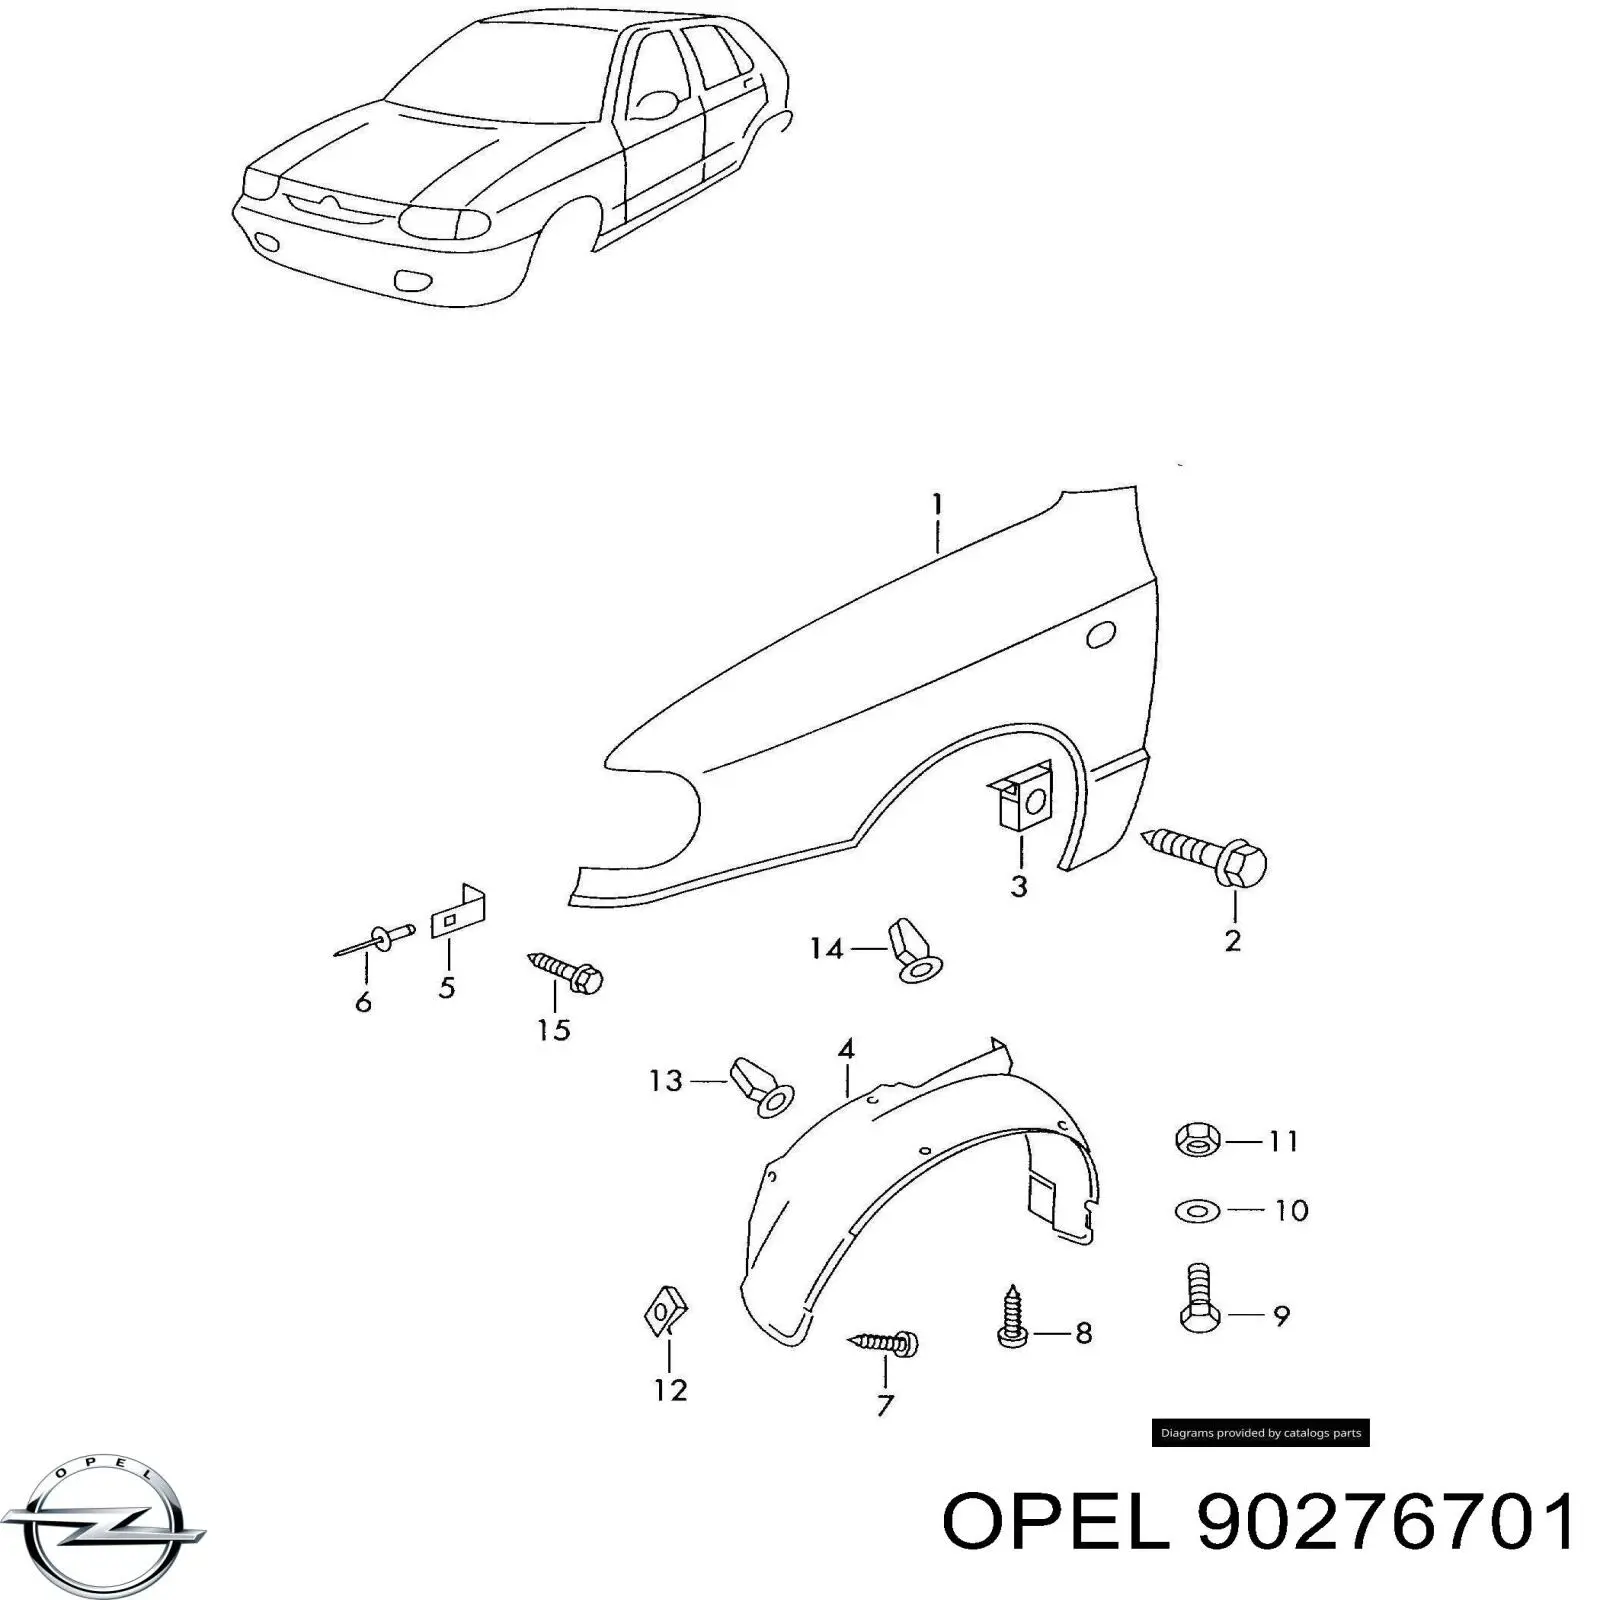 Soporte para radiador superior para Opel Omega (16, 17, 19)